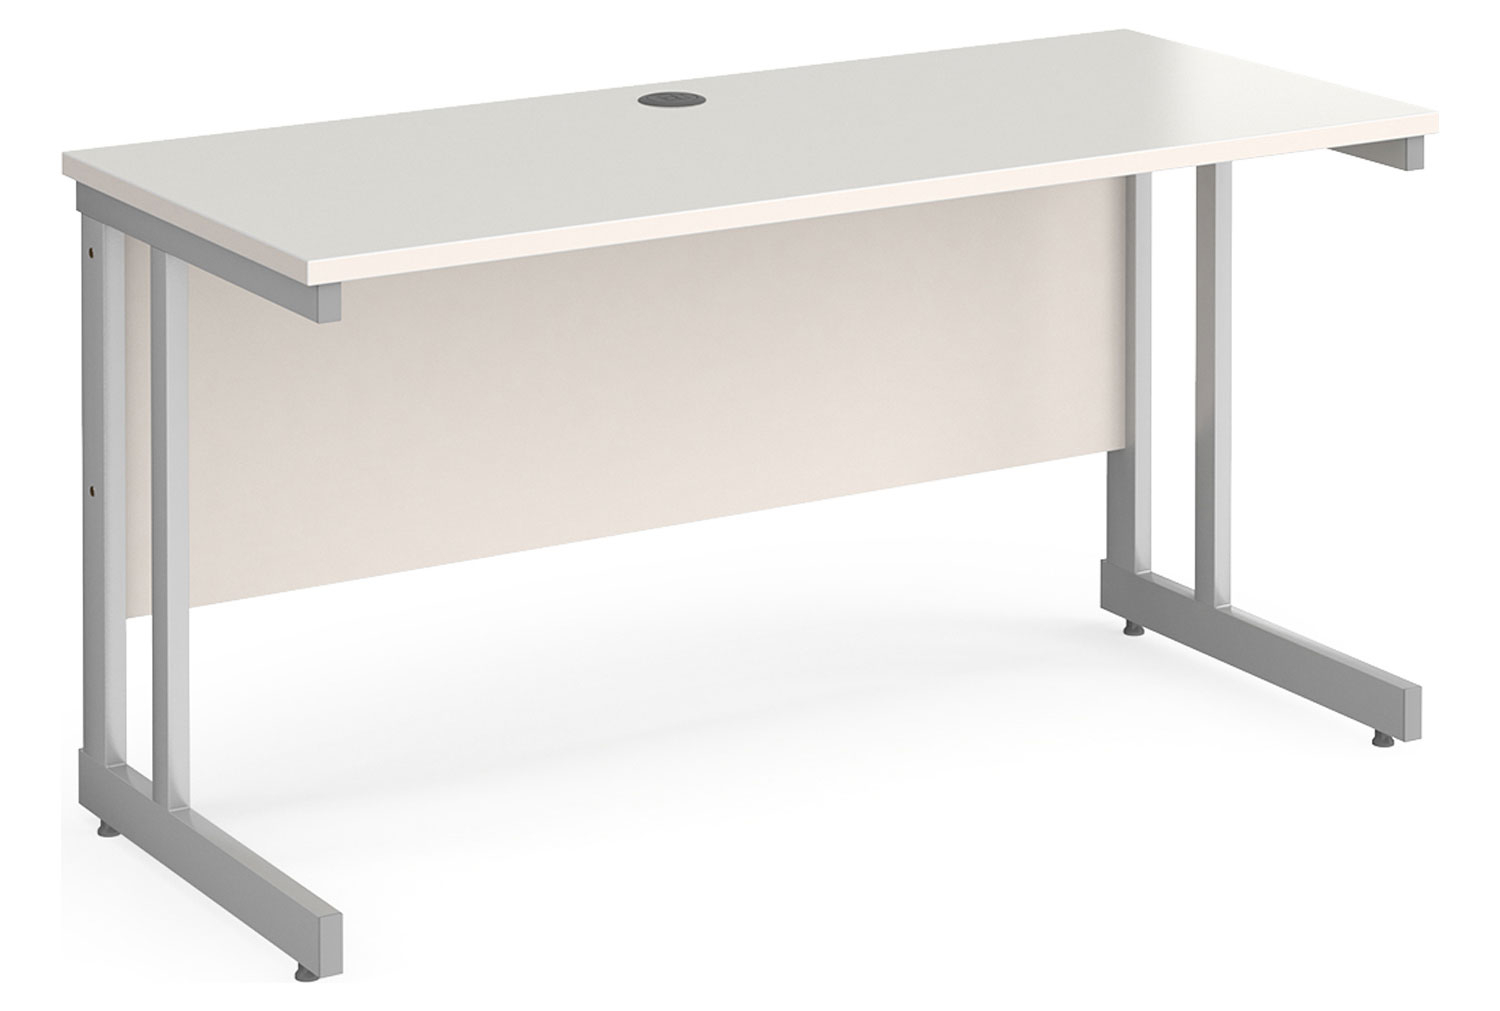 All White Double C-Leg Narrow Rectangular Office Desk, 140wx60dx73h (cm)